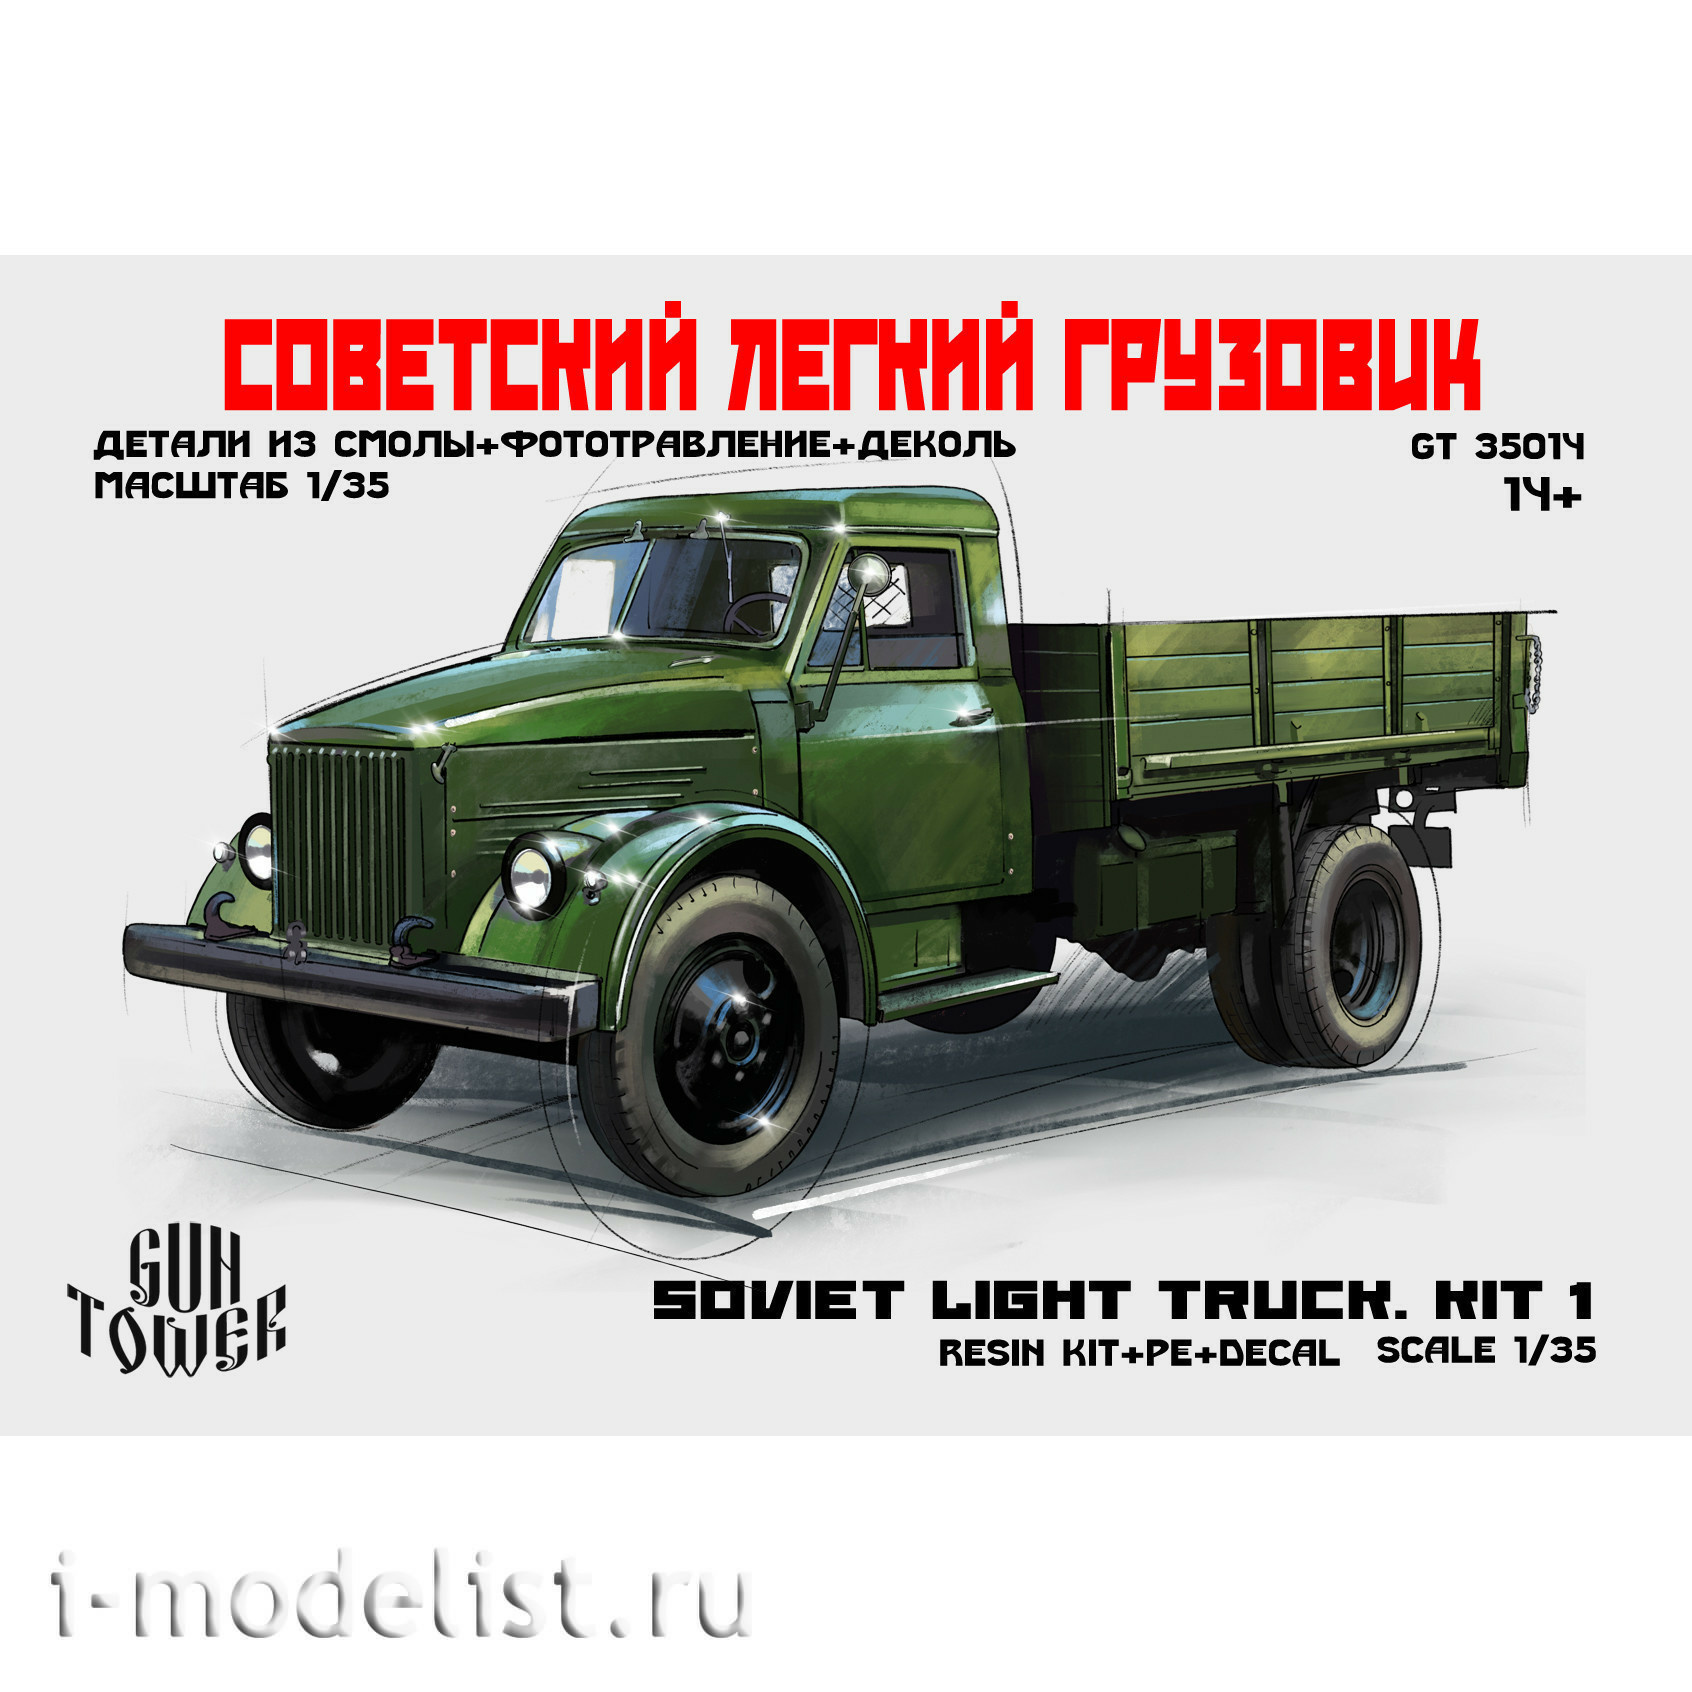 35014 GunTower Models 1/35 Советский легкий грузовик. Kit 1. (51)